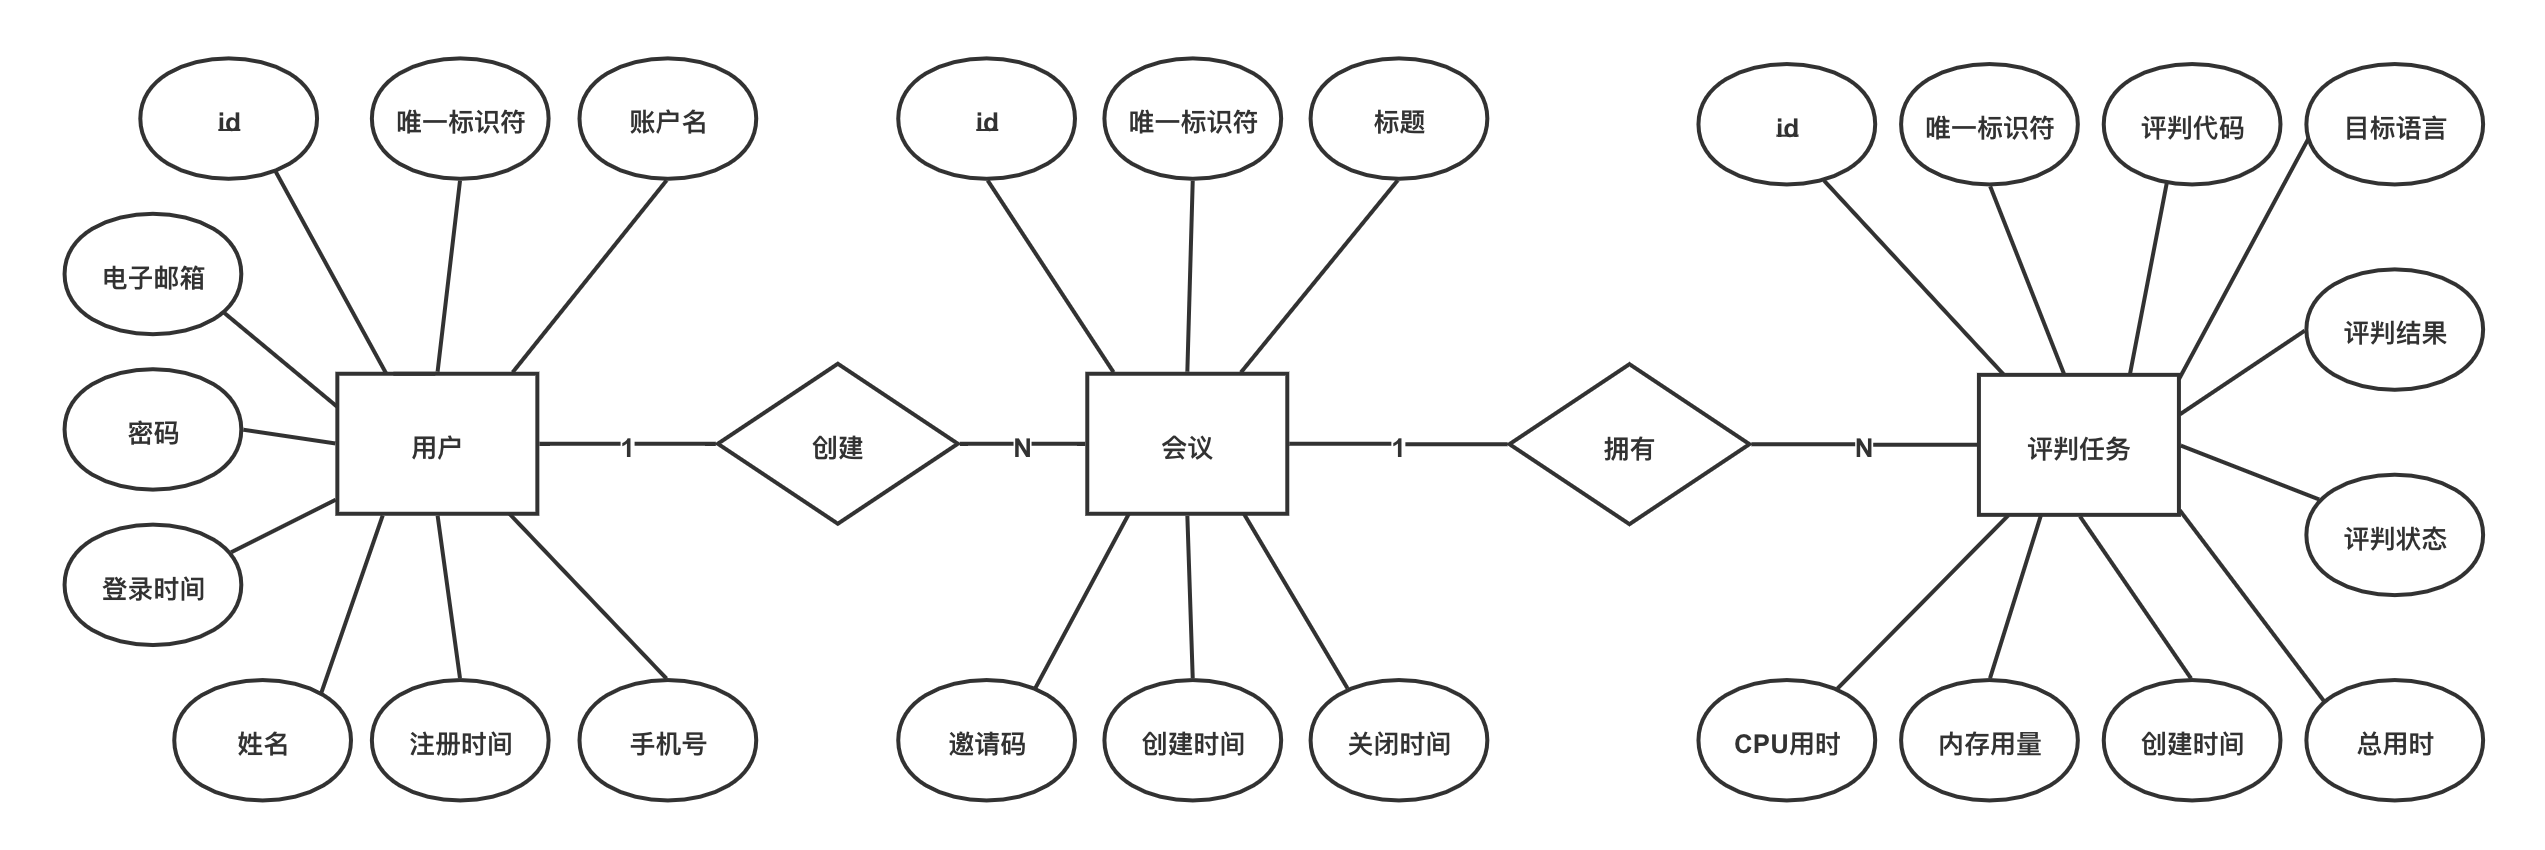 图4-8 系统数据库实体关系E-R图